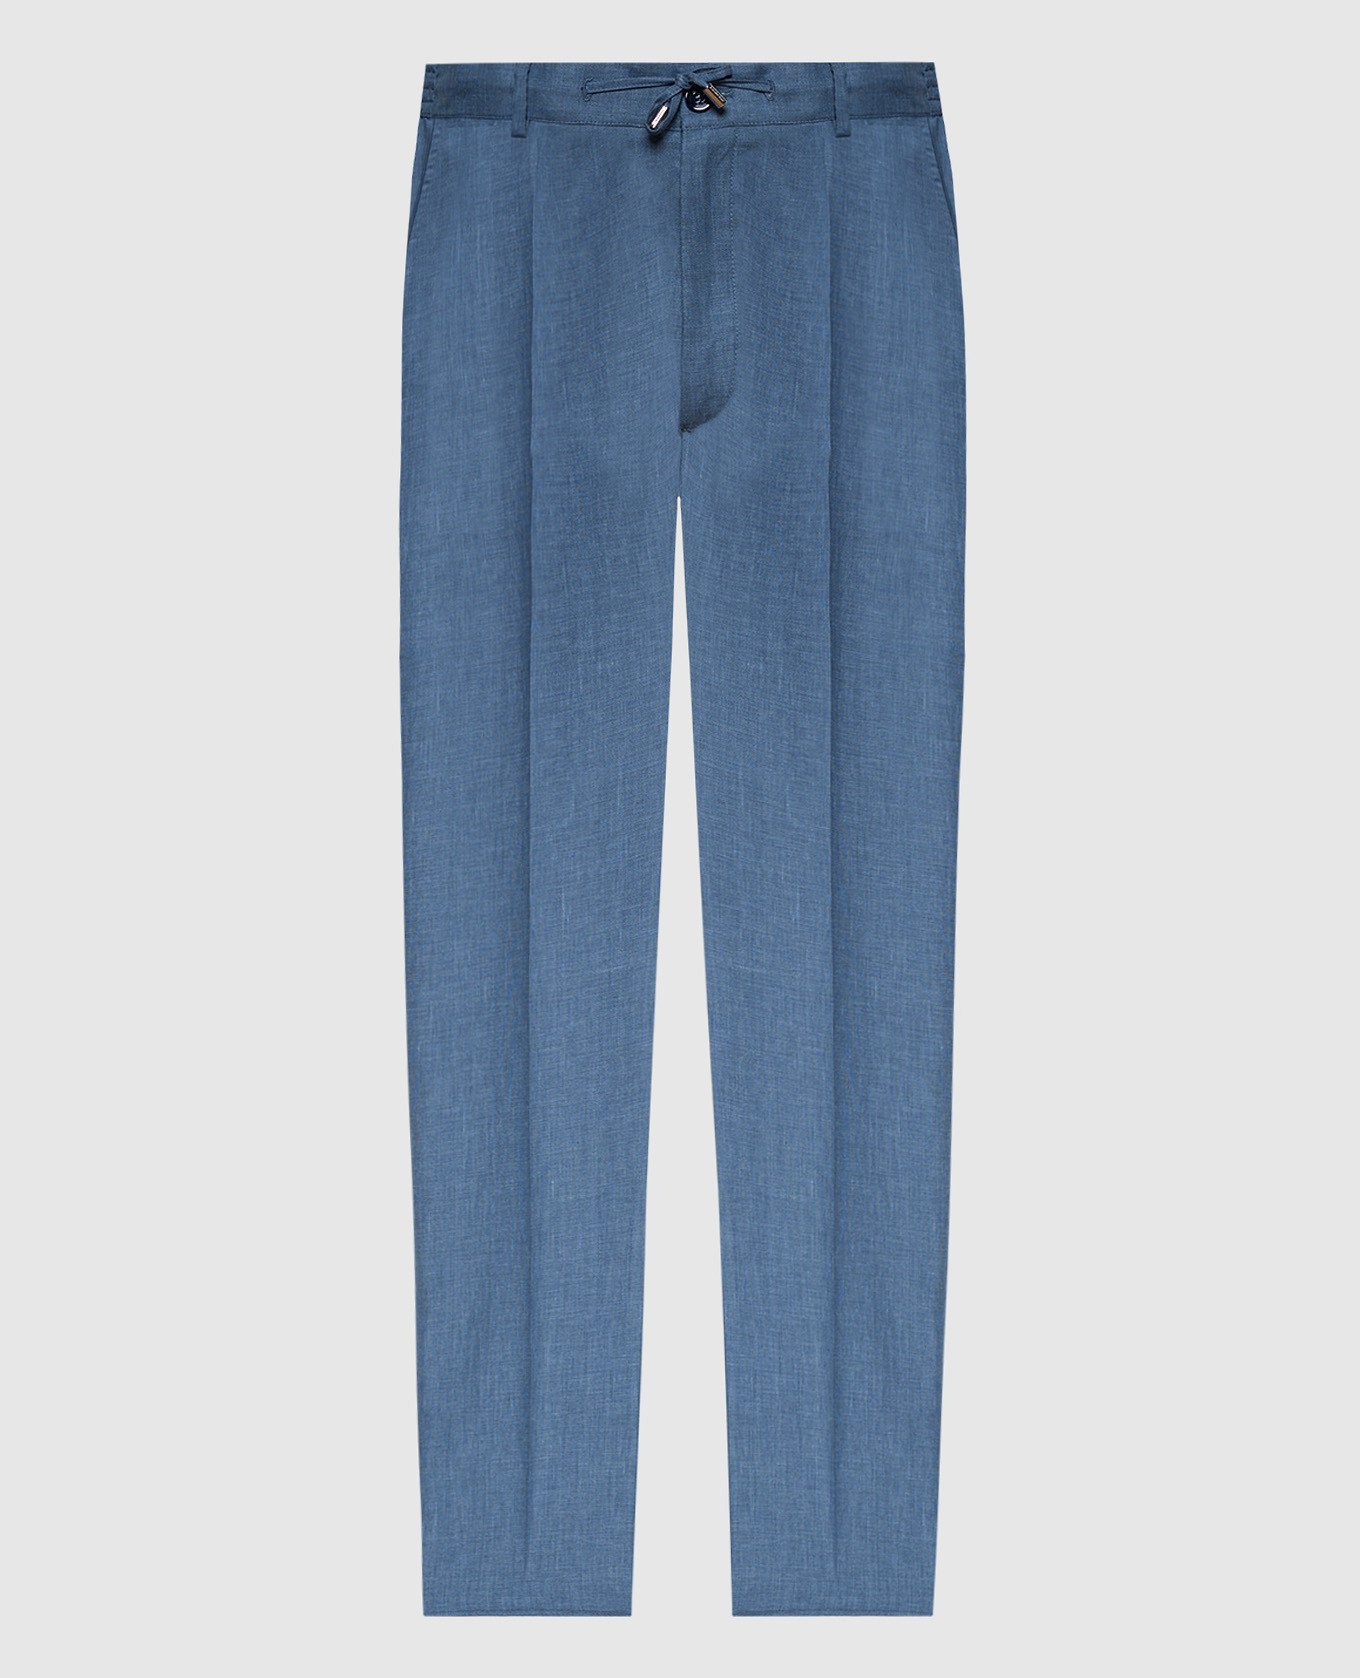 Голубые брюки с леном, шерстью и шелком с металлическим логотипом.